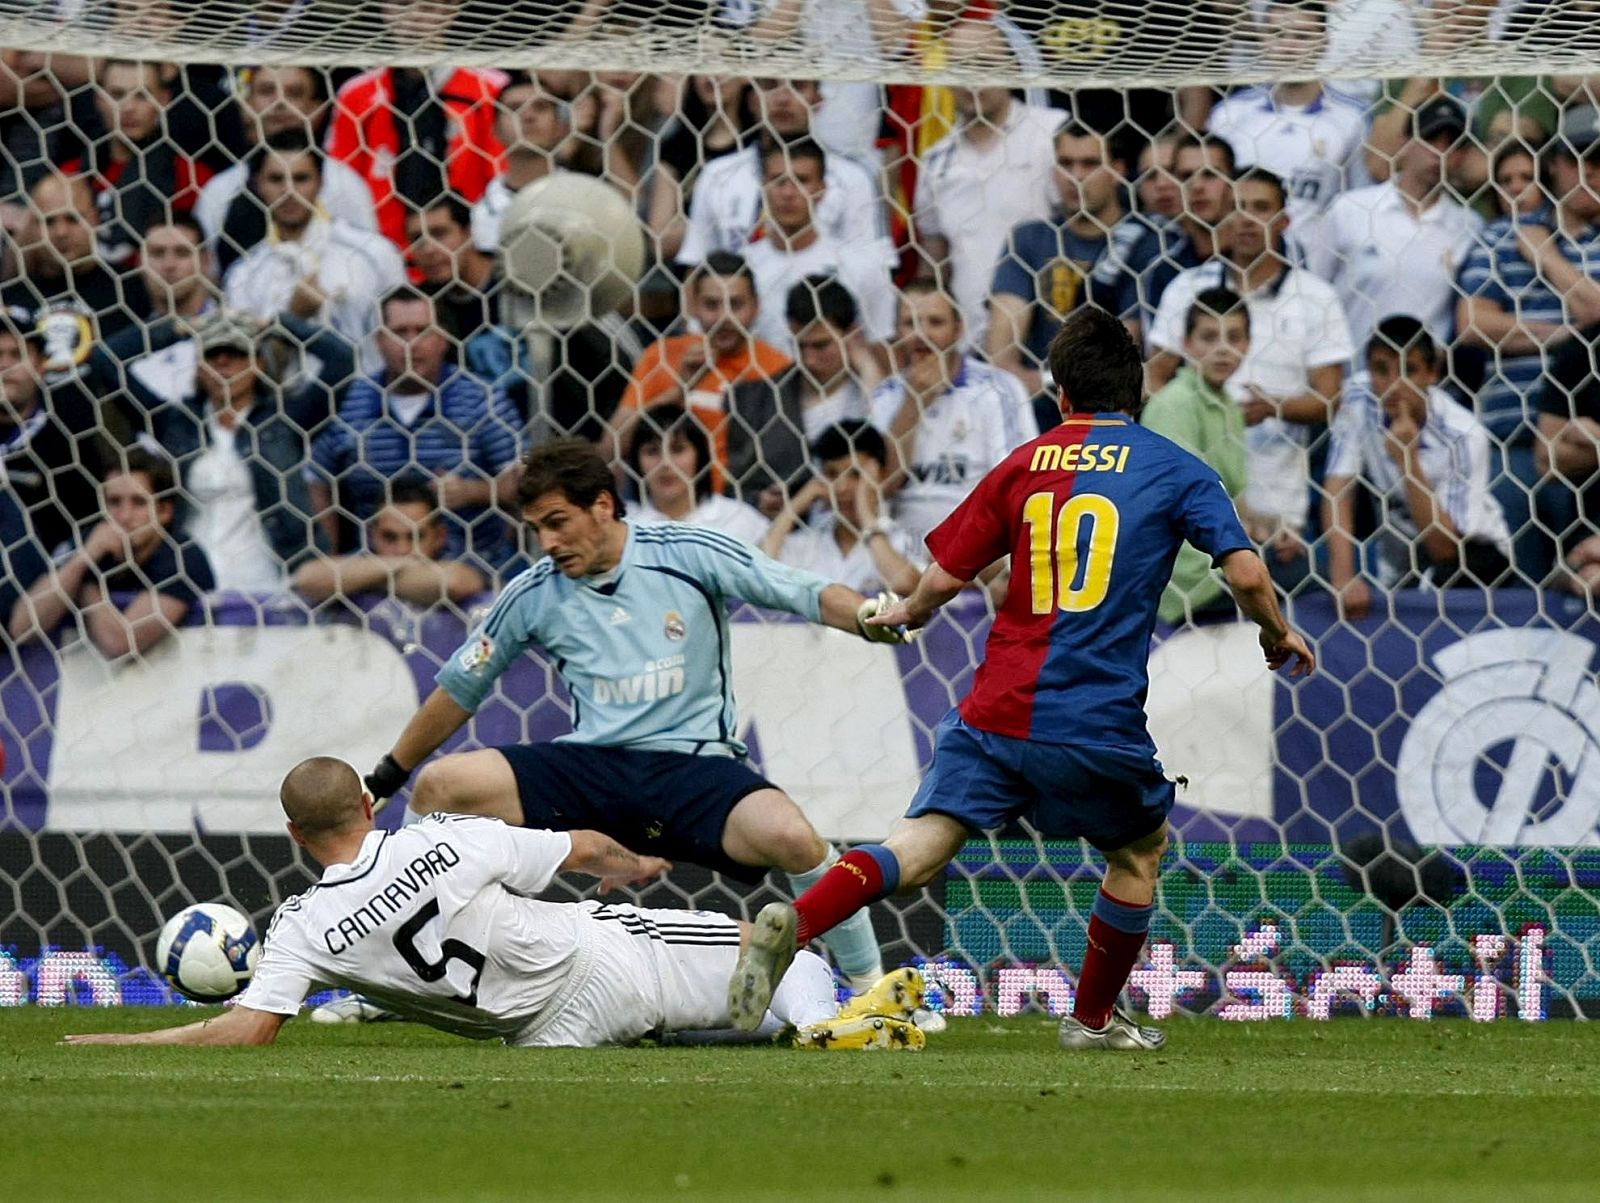 Y el tercero del Barcelona ha llegado de la mano de Messi, tras un error en defensa de Lassana Diarra.